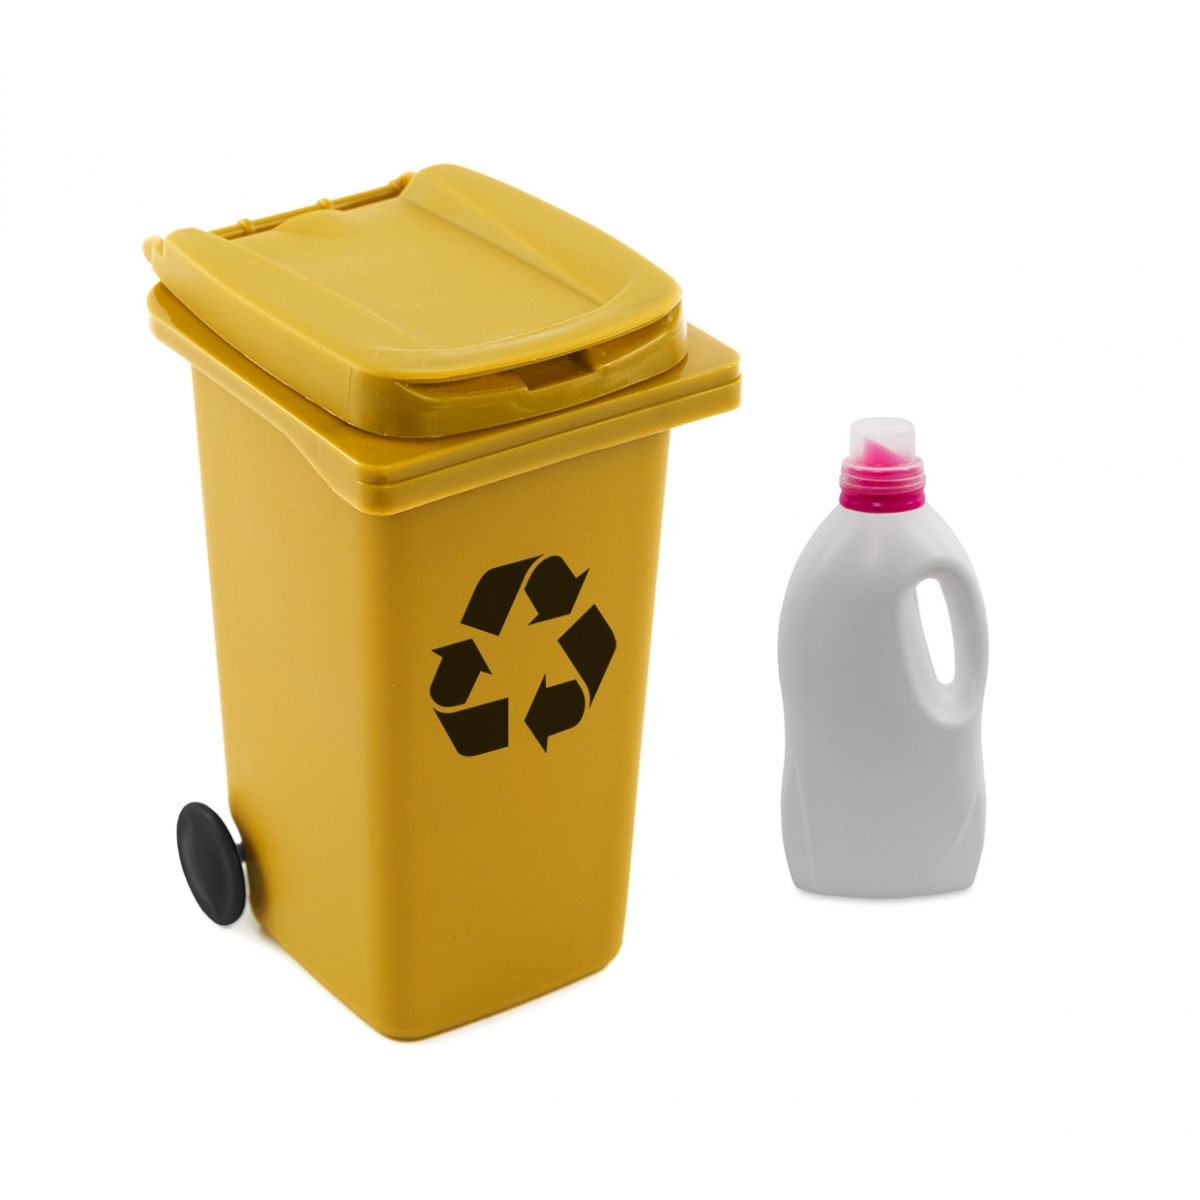 Imagen en la que se ve el concepto de reciclaje de envases